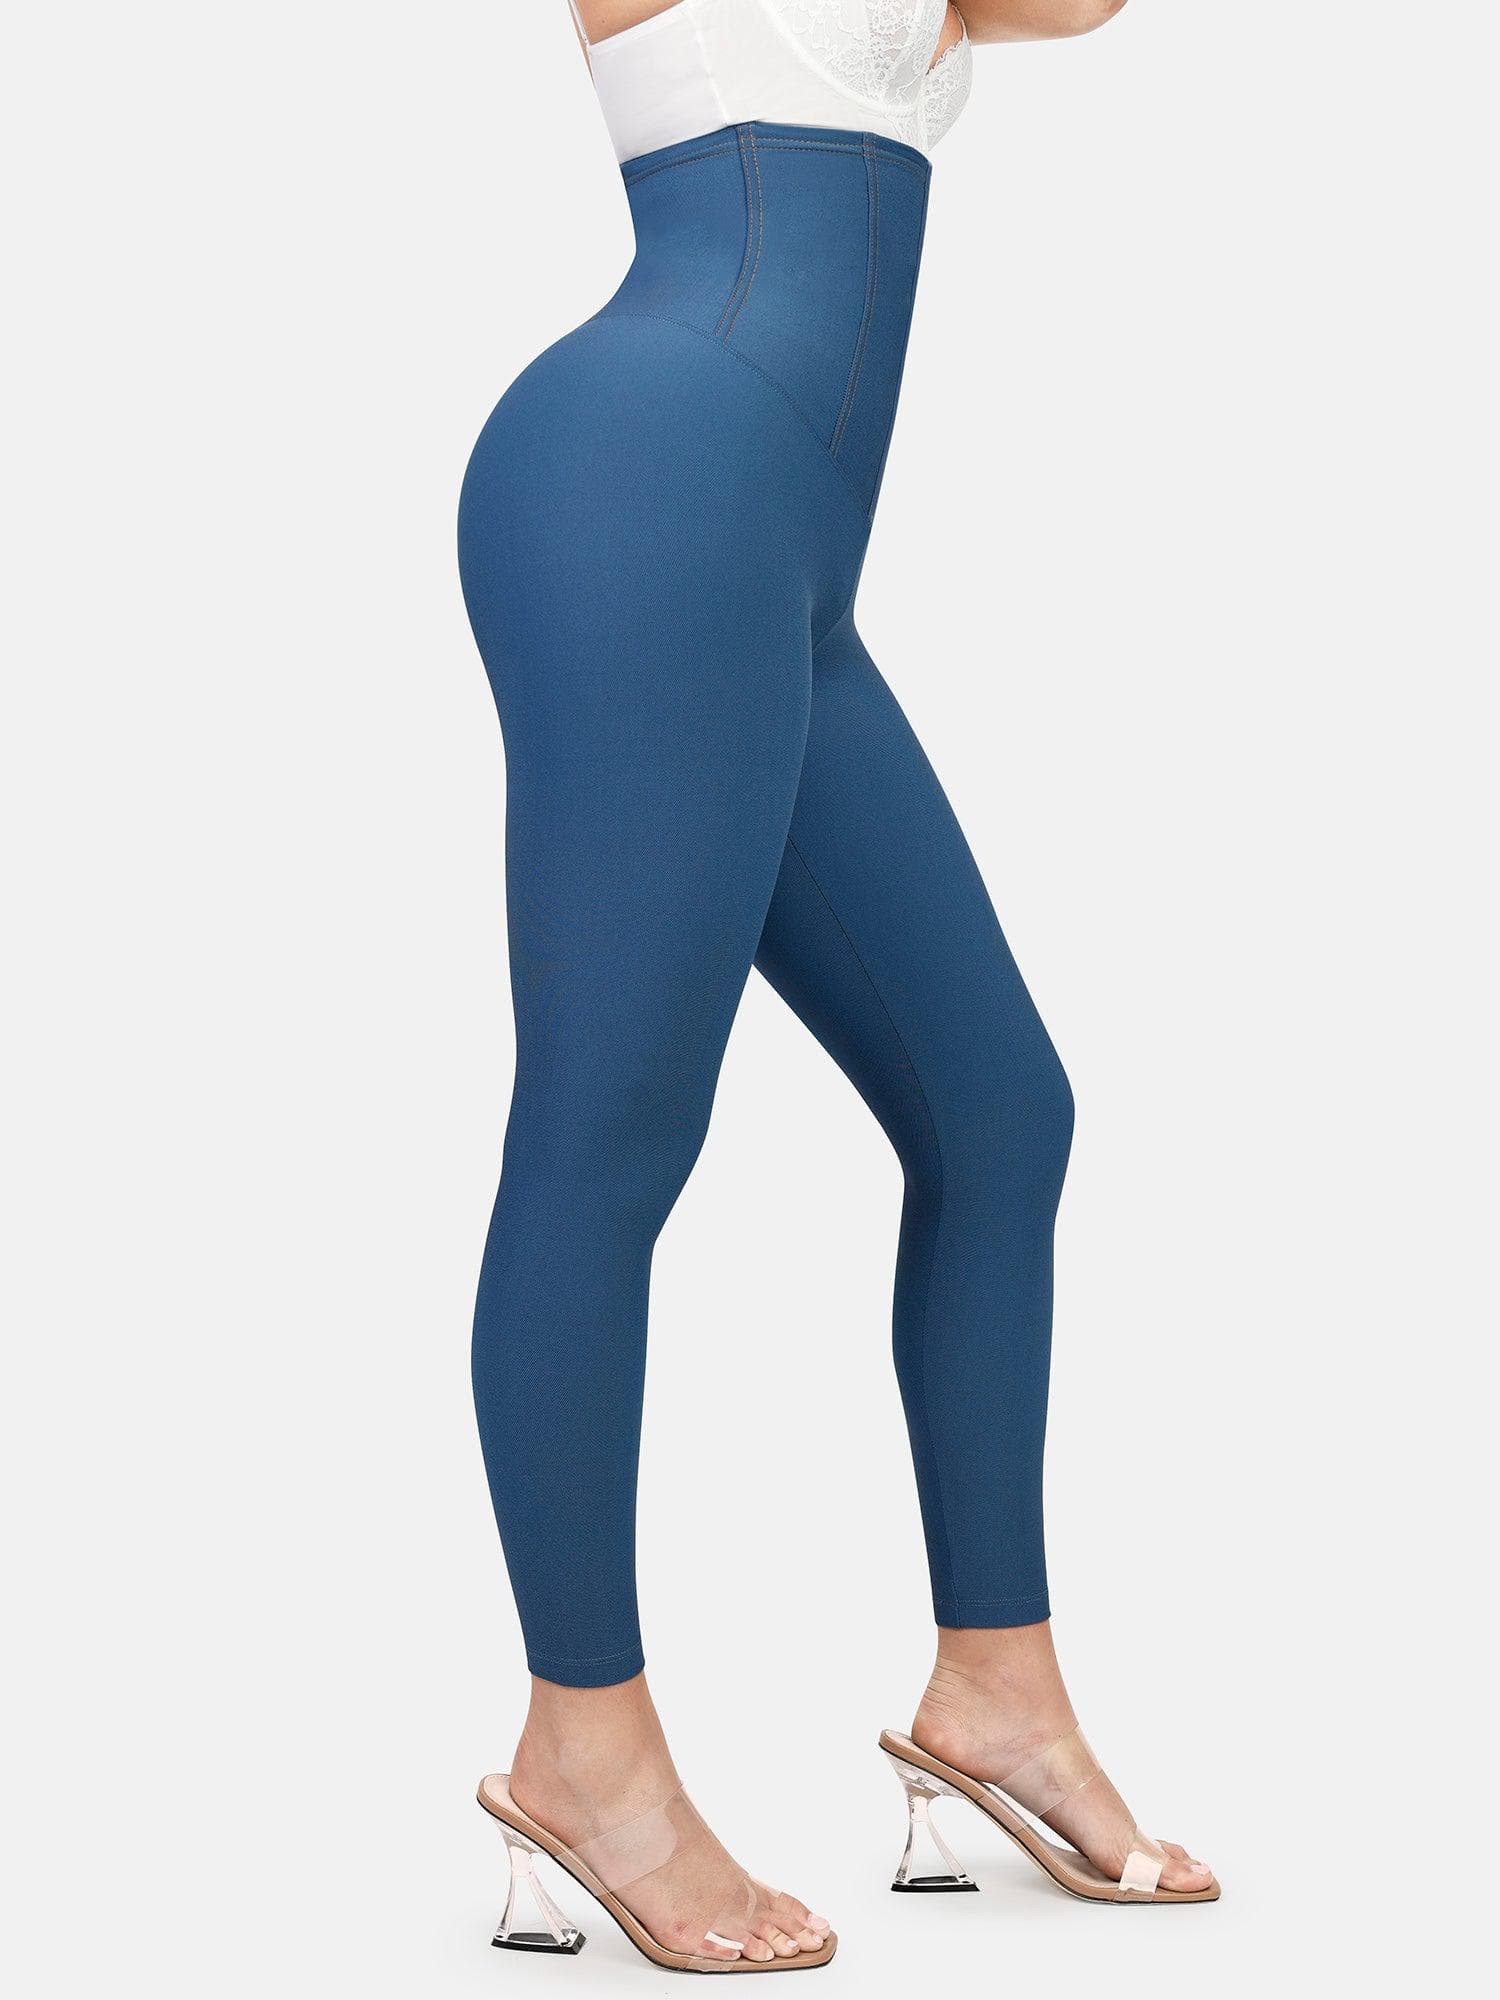 women leggings tummy control for winter Women's Denim Print Jeans Look Like  Leggings Stretchy High Waist Slim Skinny Jeggings